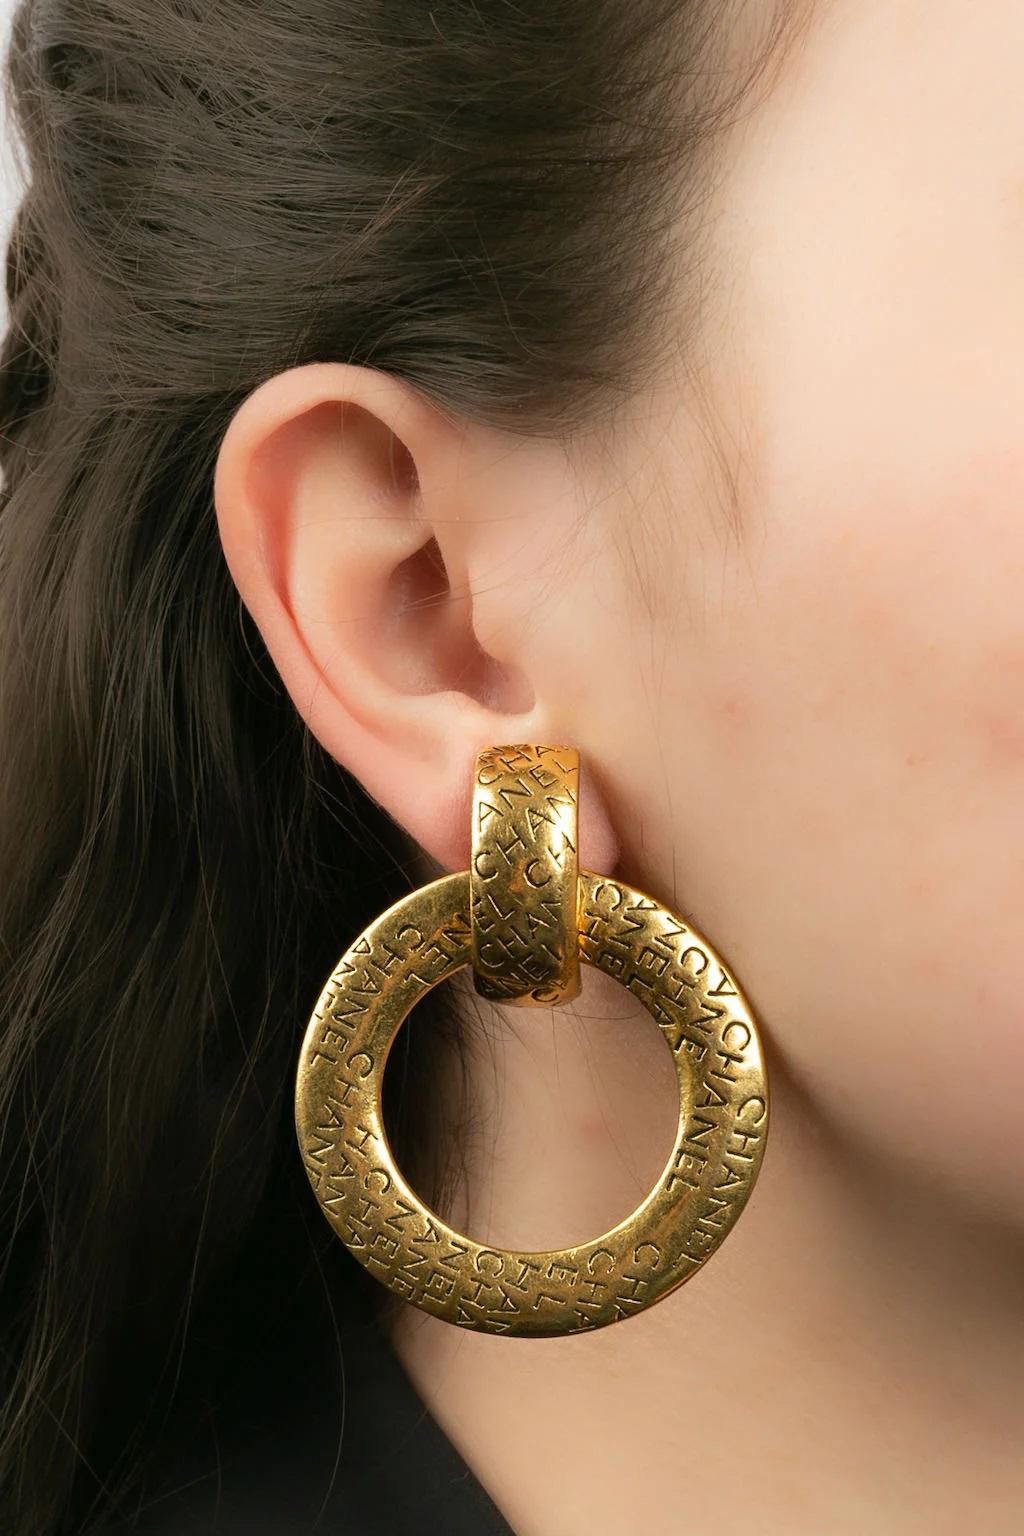 Chanel - (Made in France) Gravierte goldene Metall-Clip-Ohrringe.

Zusätzliche Informationen:
Abmessungen: 6 L cm

Bedingung: 
Sehr guter Zustand

Verkäufer Ref Nummer: BOB29